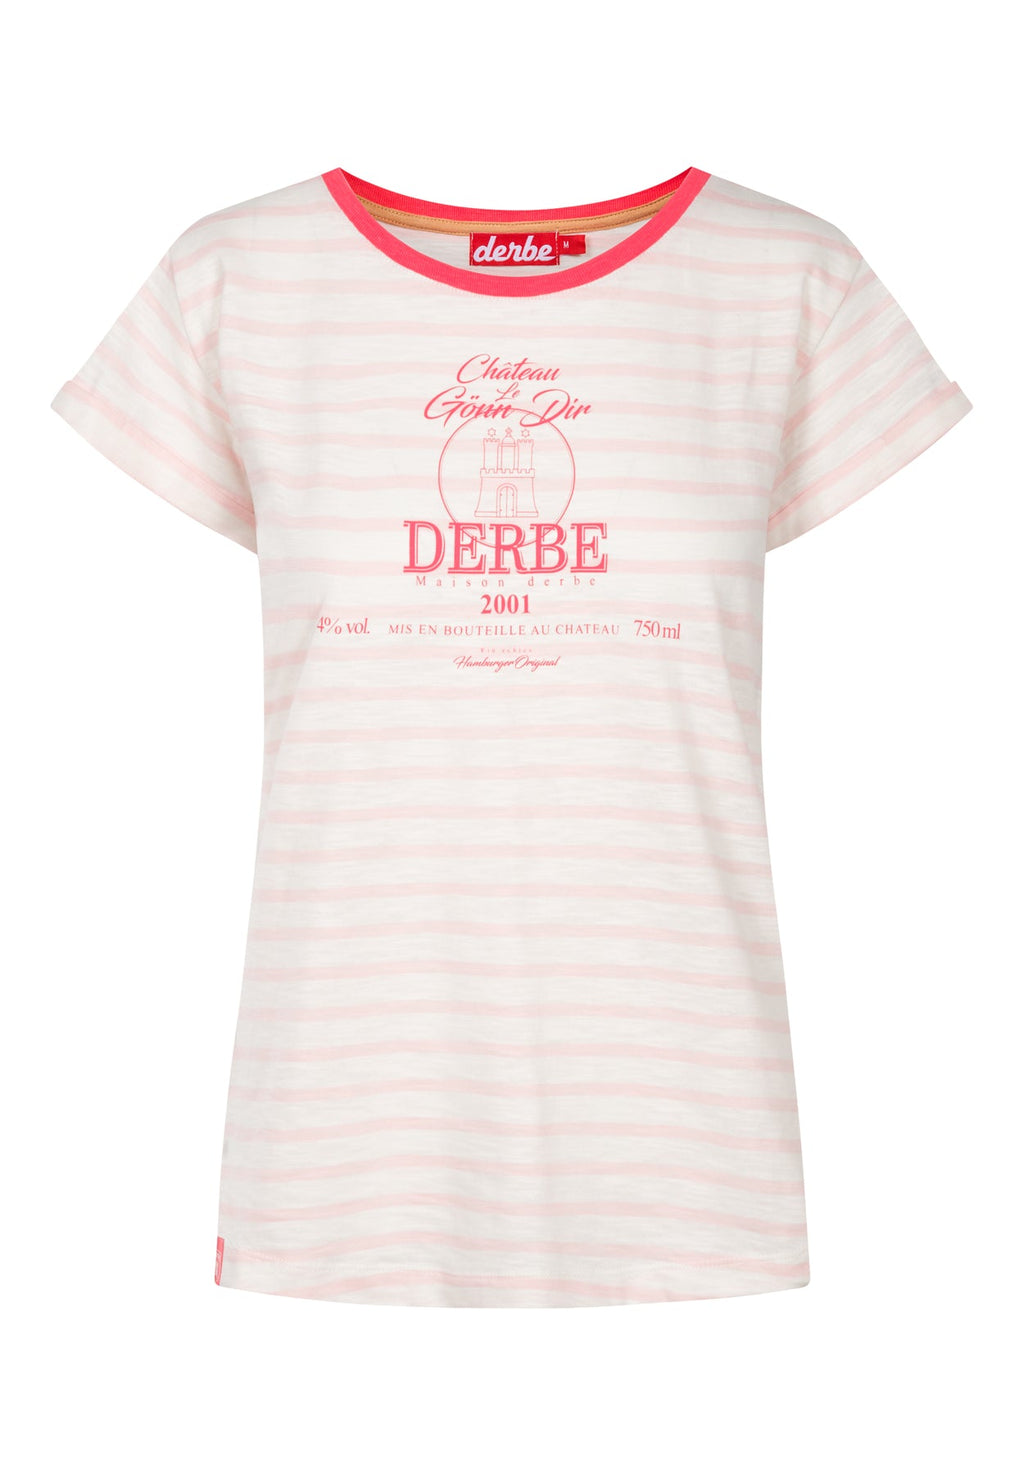 T-Shirt für Frauen von Derbe Hamburg mit Großem Sprudelwasser Druck auf der Brust in Farben Quer gestreift erdbeere.